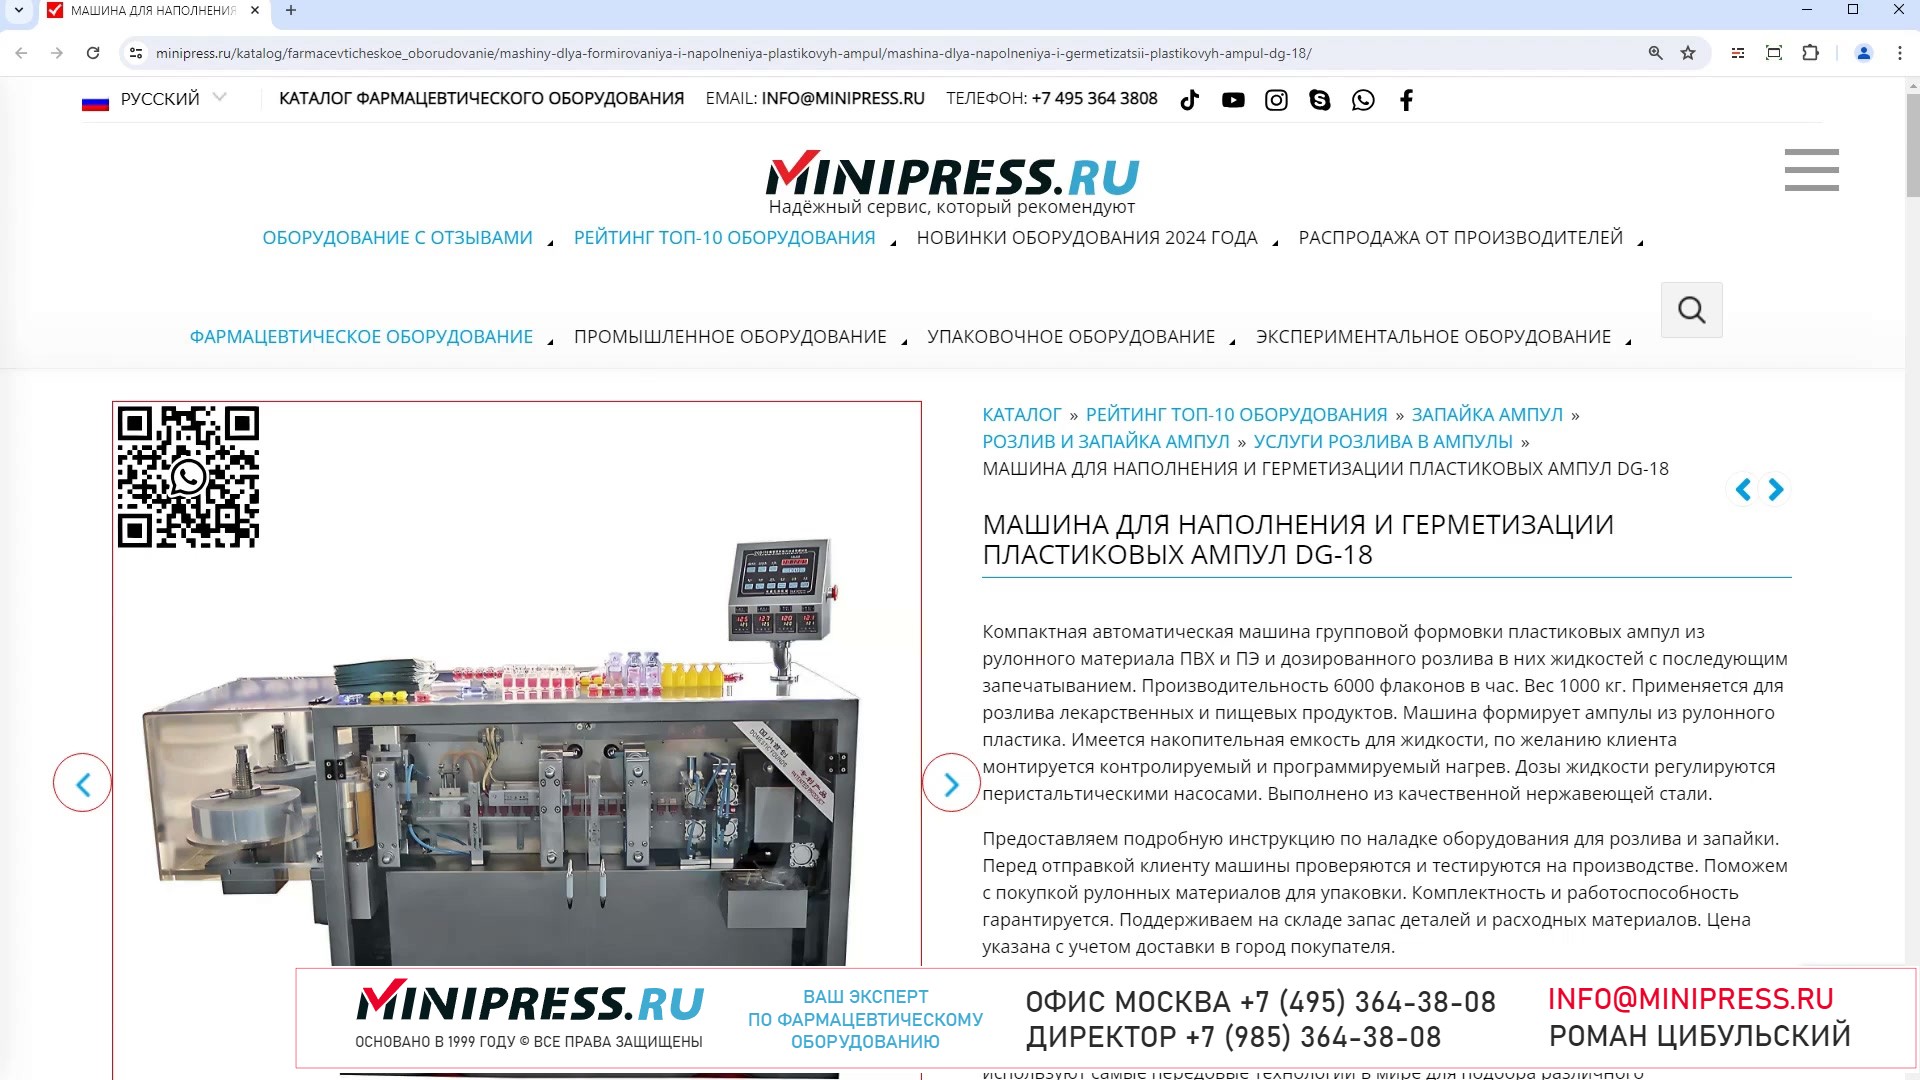 Minipress.ru Машина для наполнения и герметизации пластиковых ампул DG-18